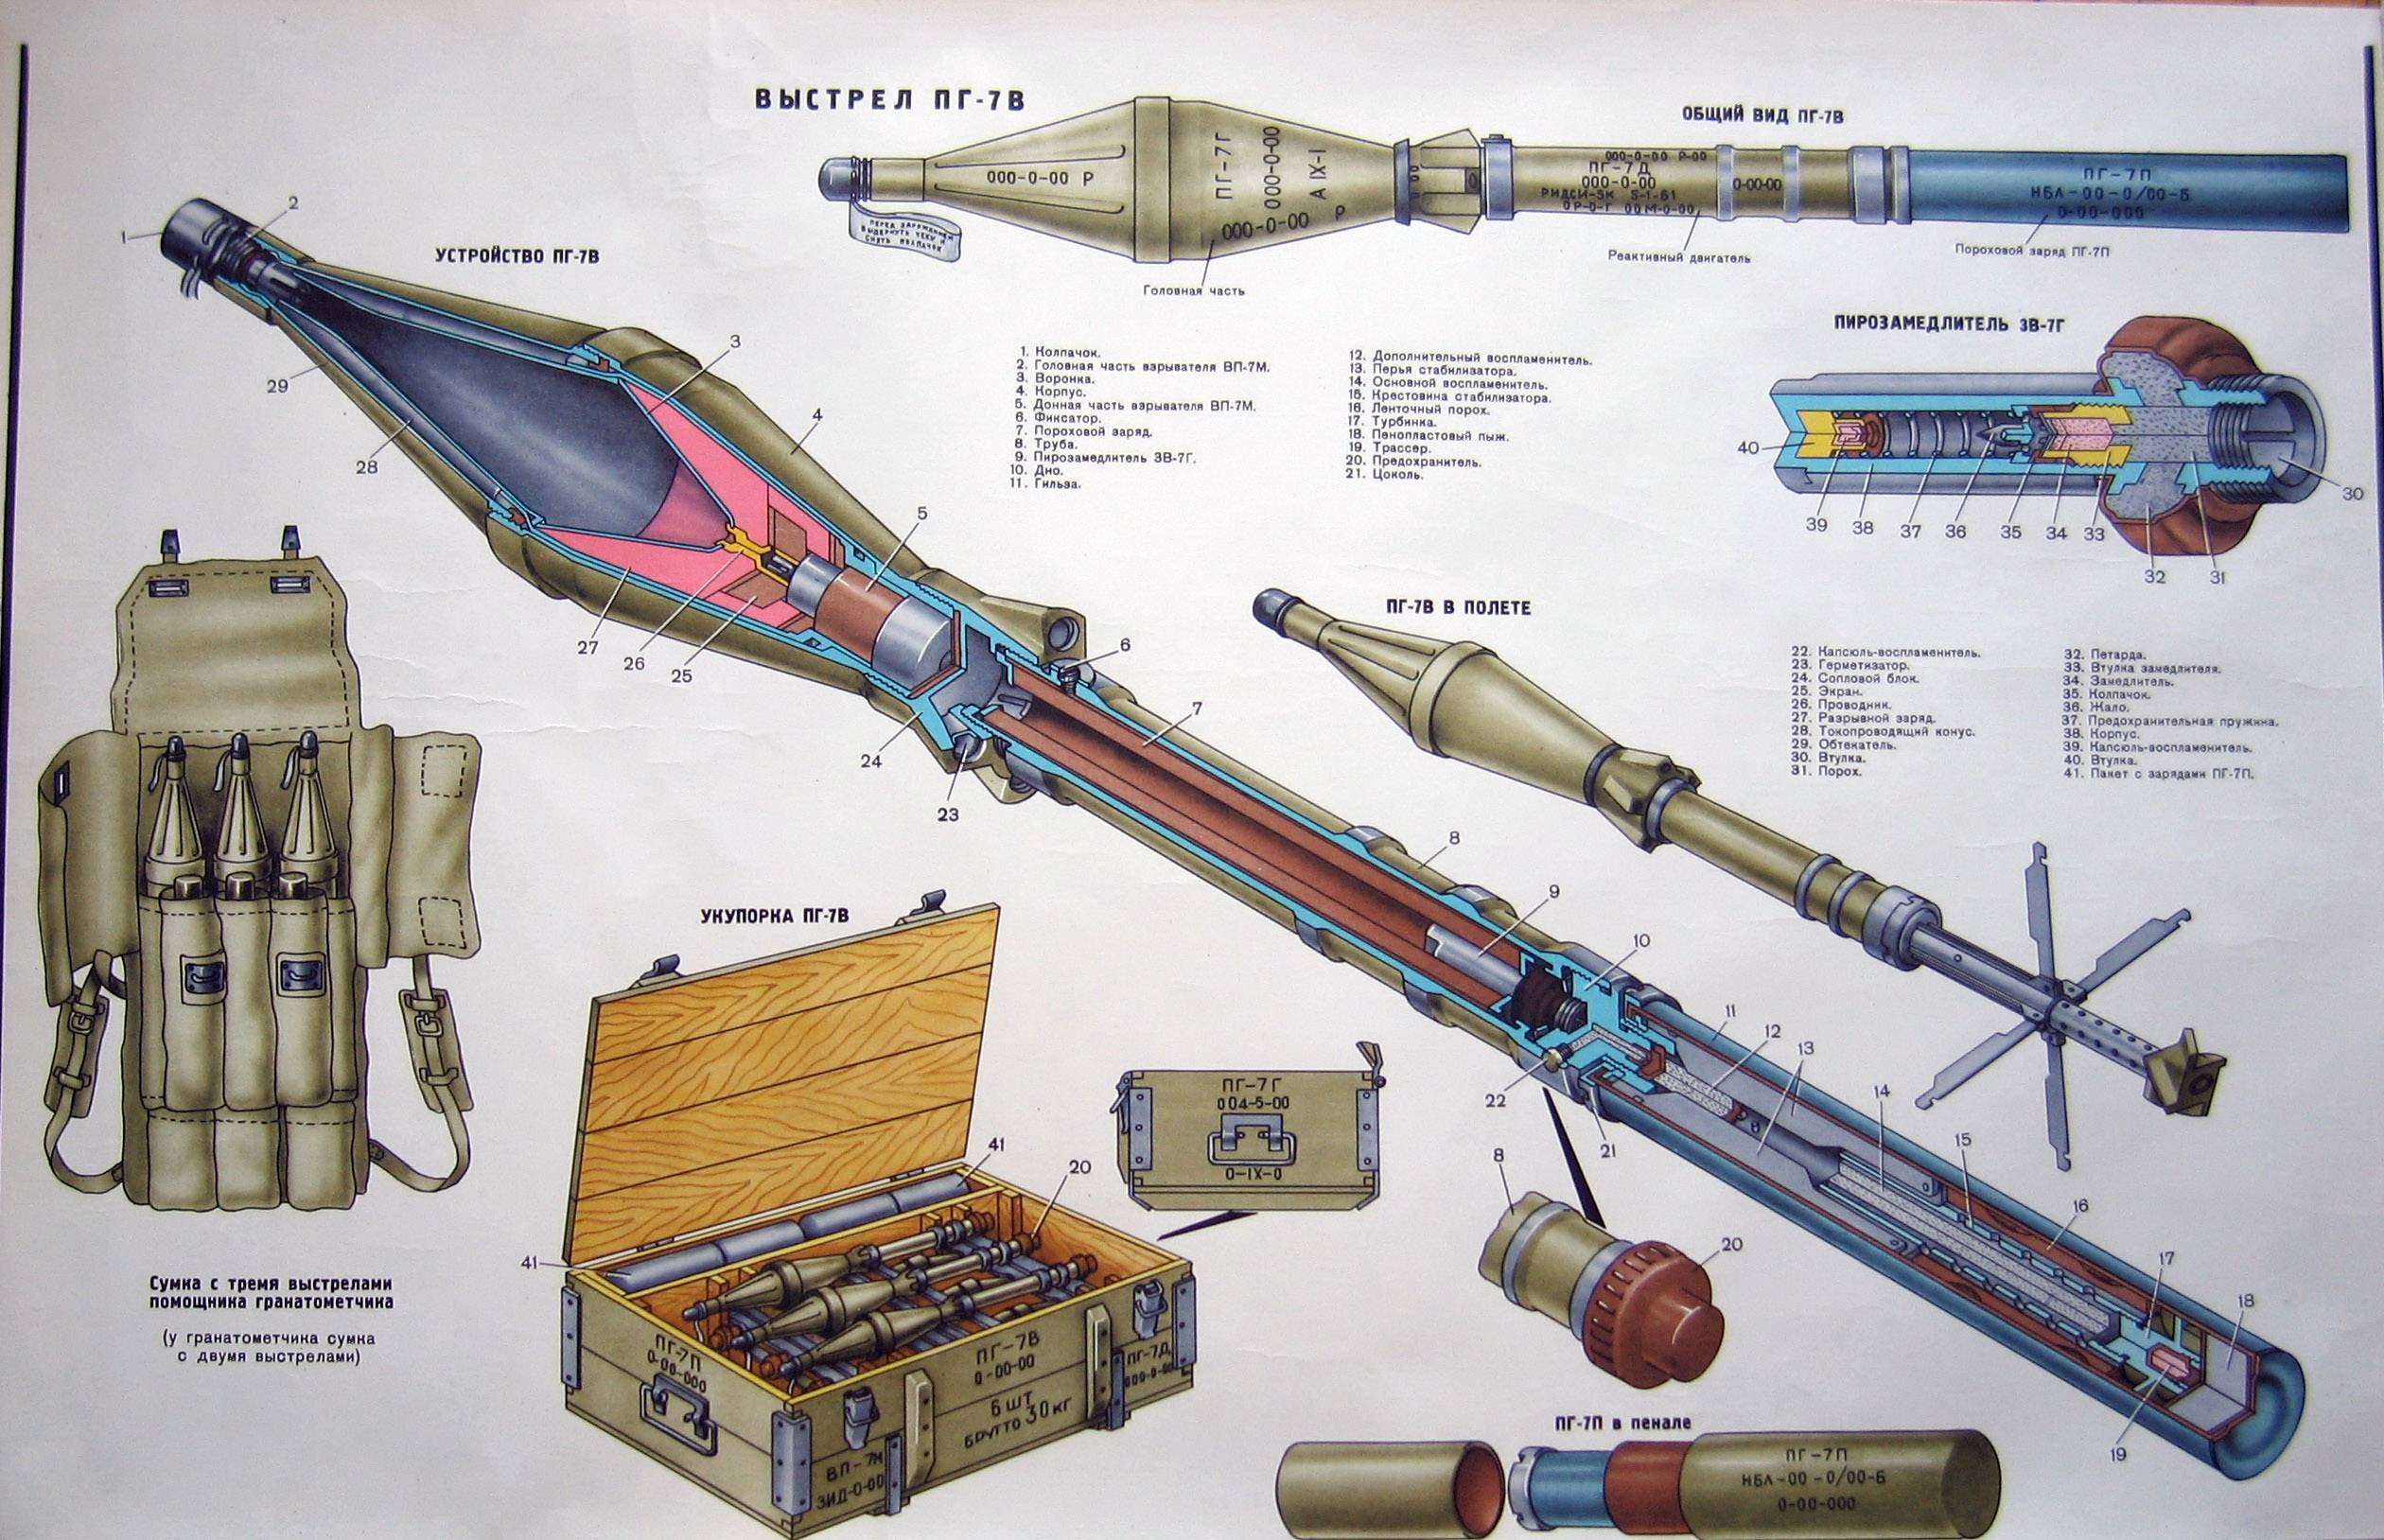 Спг-9 — советский станковый противотанковый гранатомет: история создания, описание конструкции, особенности ттх, модификации и применение